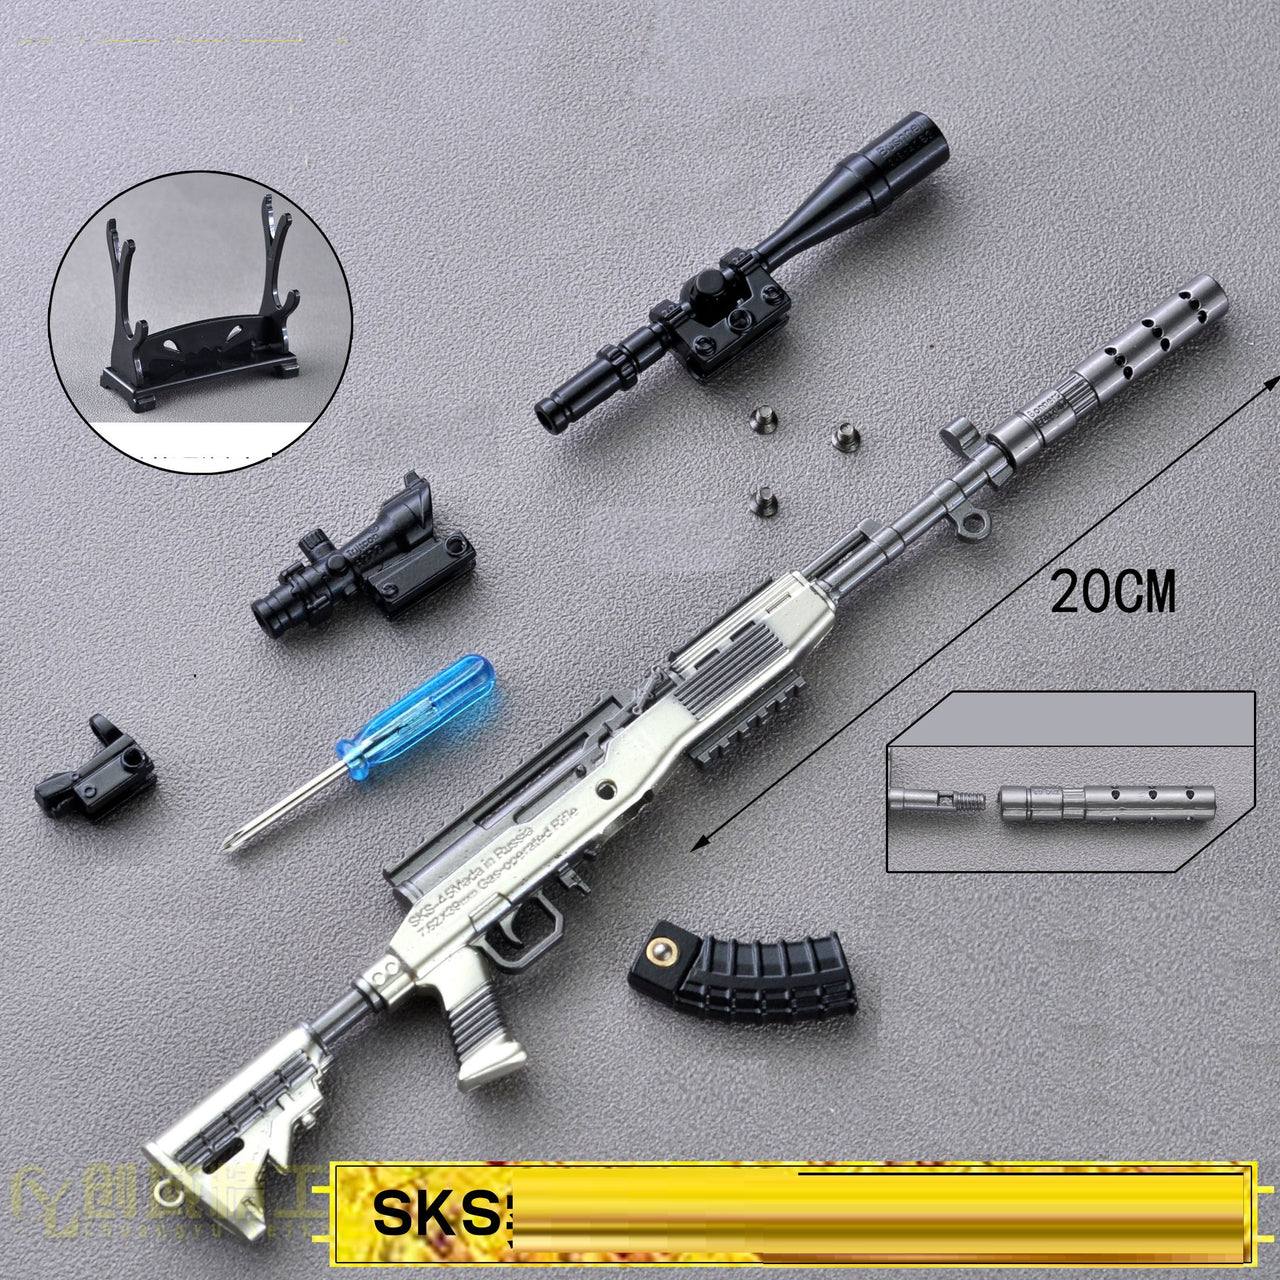 Miniature 98k AWM M24 M416 Toy Keychain